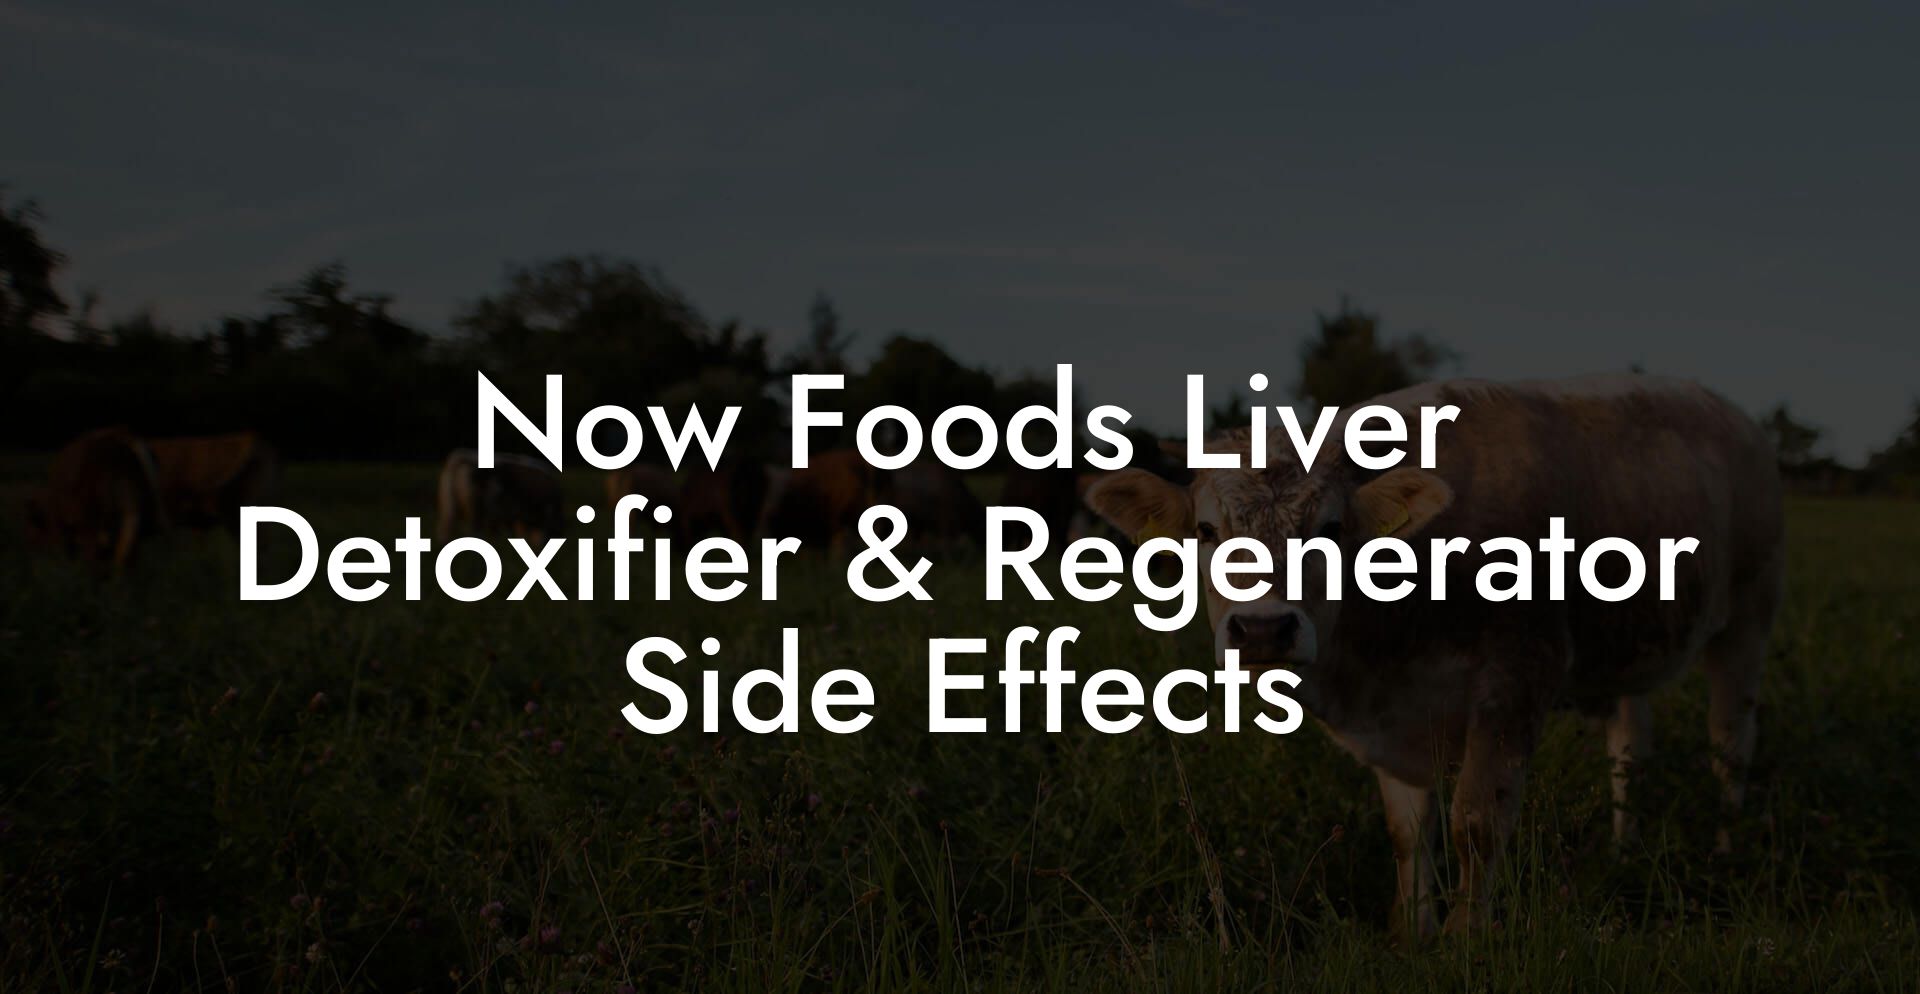 Now Foods Liver Detoxifier & Regenerator Side Effects